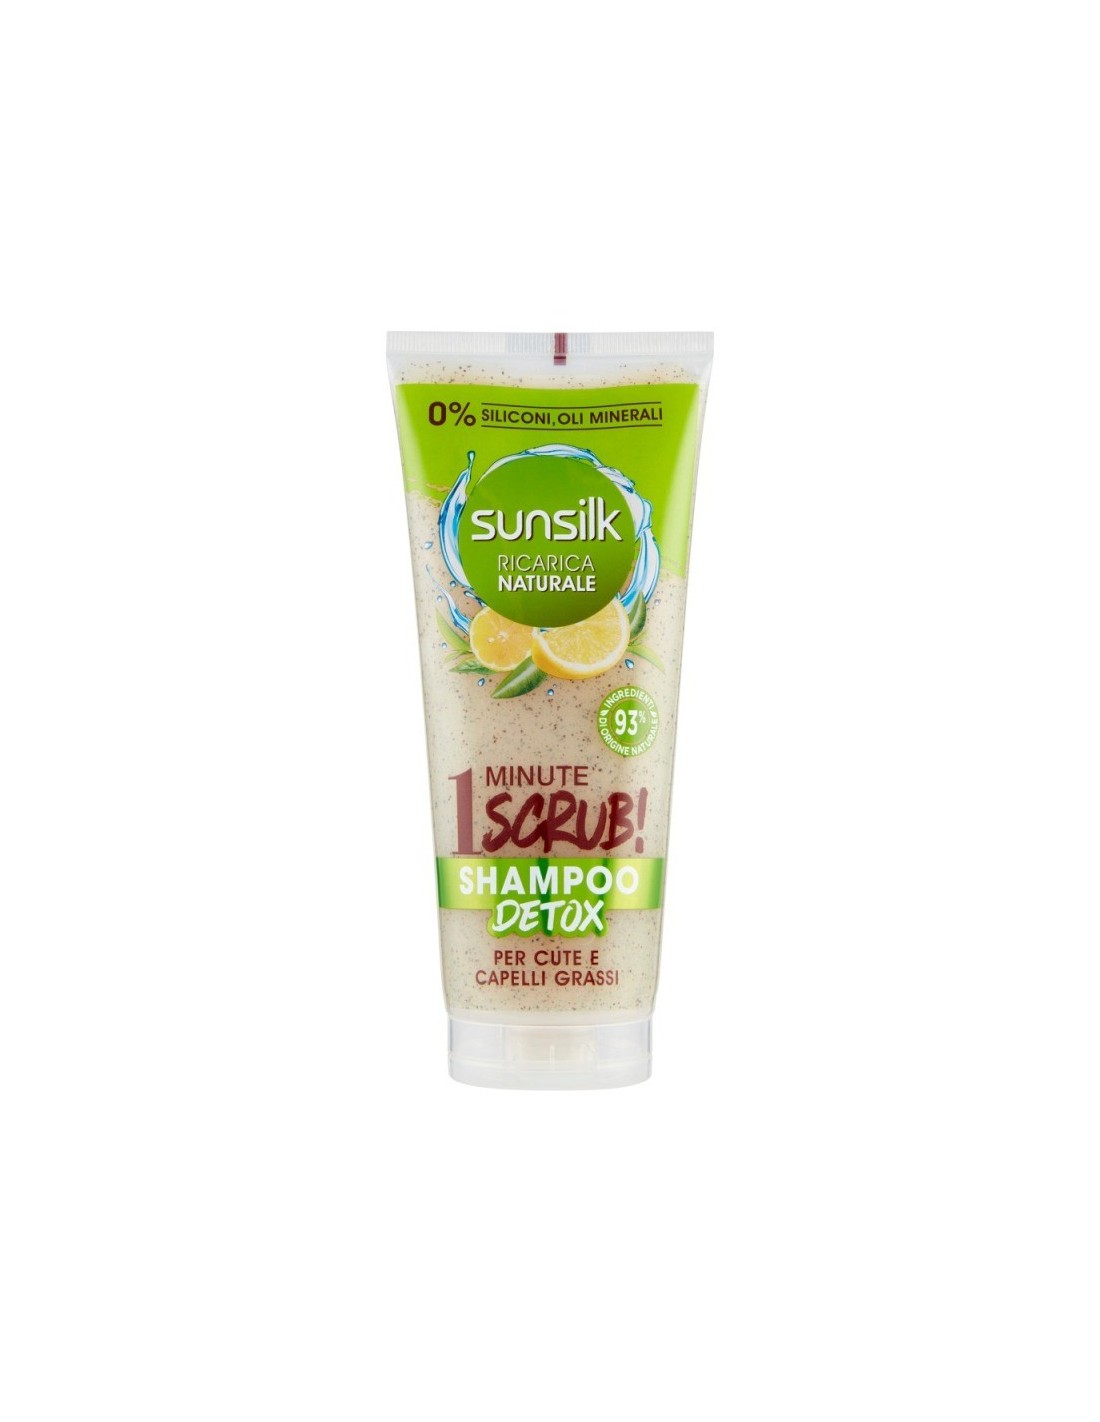 Sunsilk Ricarica Naturale 1 Minute Scrub! Shampoo Detox per Cute e Capelli  Grassi 200 ml